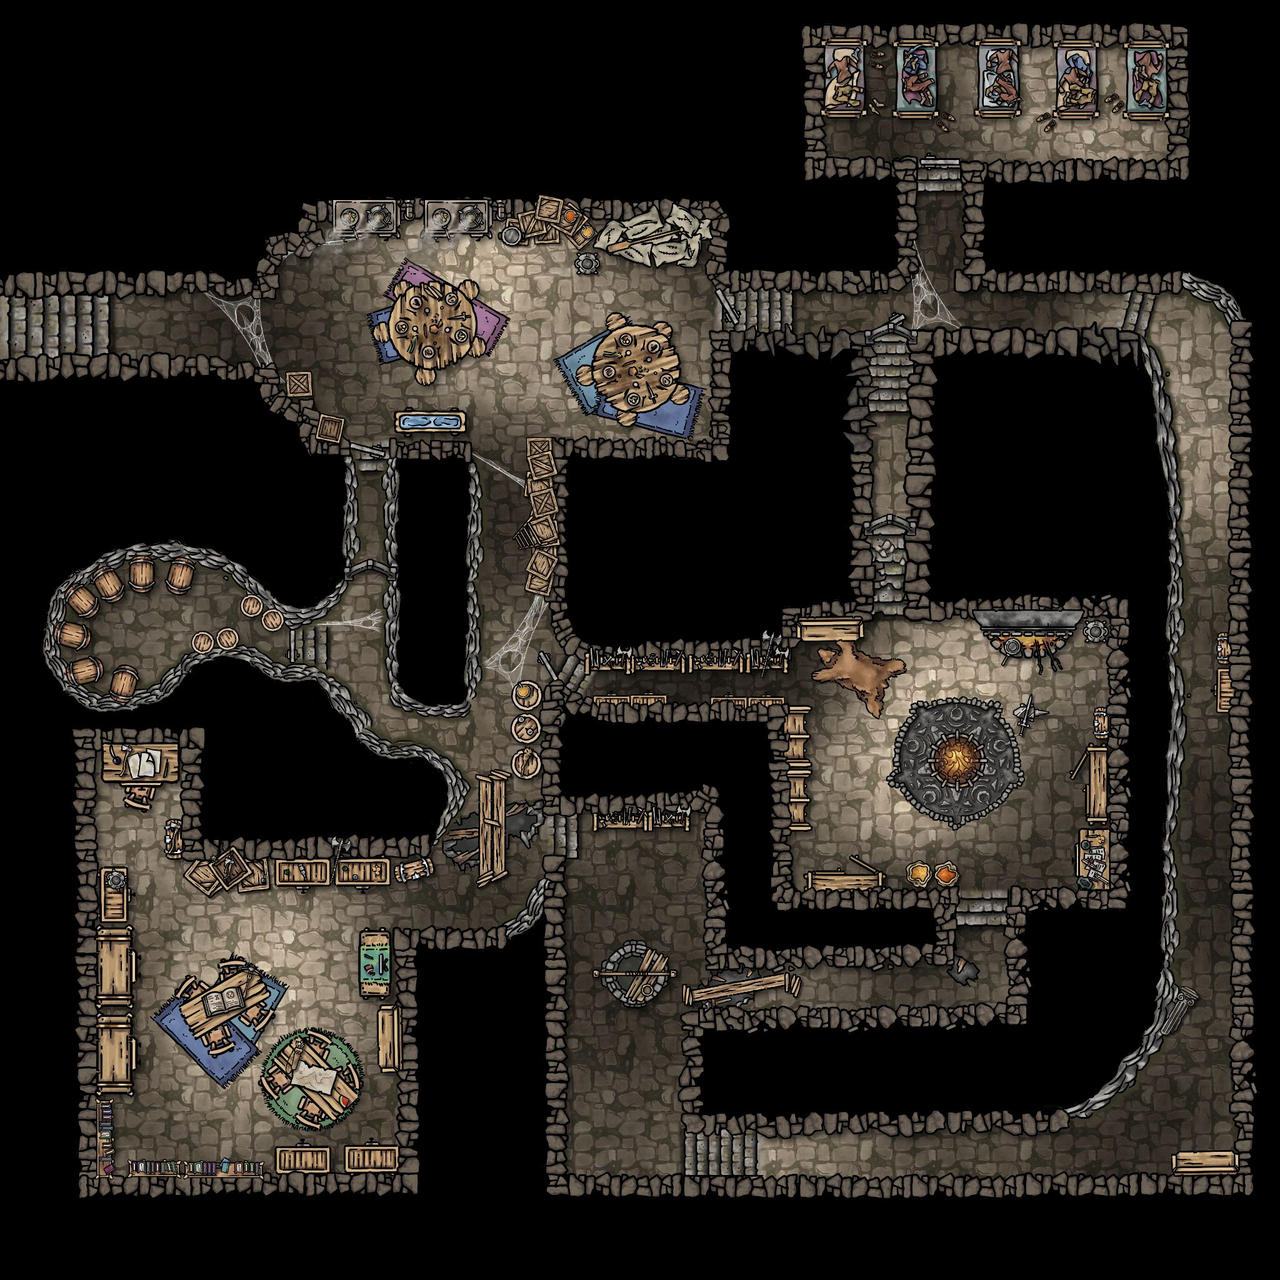 Underground rooms (RPG map) by ndvMaps on DeviantArt